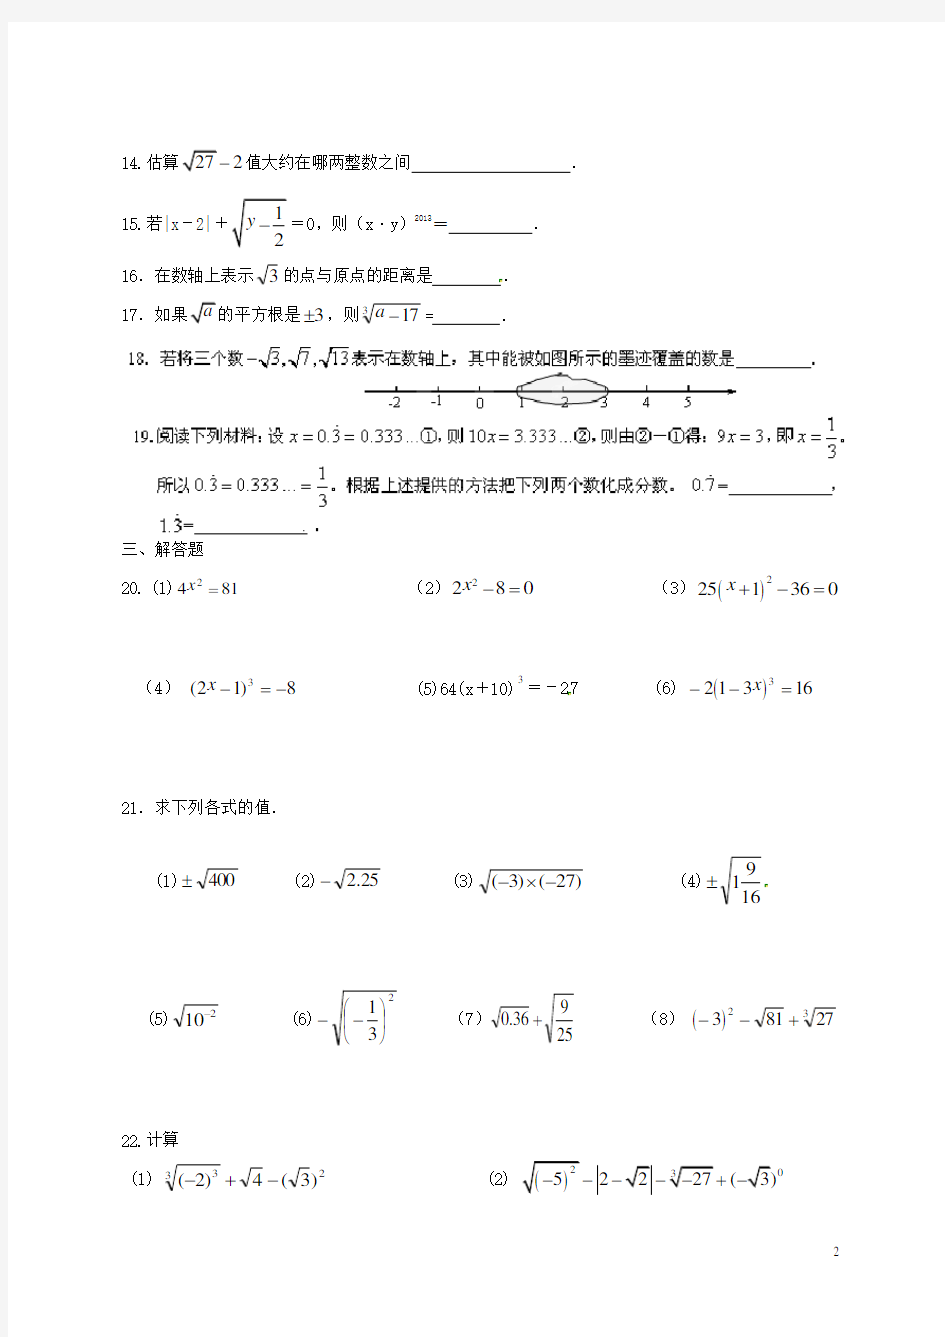 江苏省扬中市外国语中学八年级数学第11周周末作业(无答案)